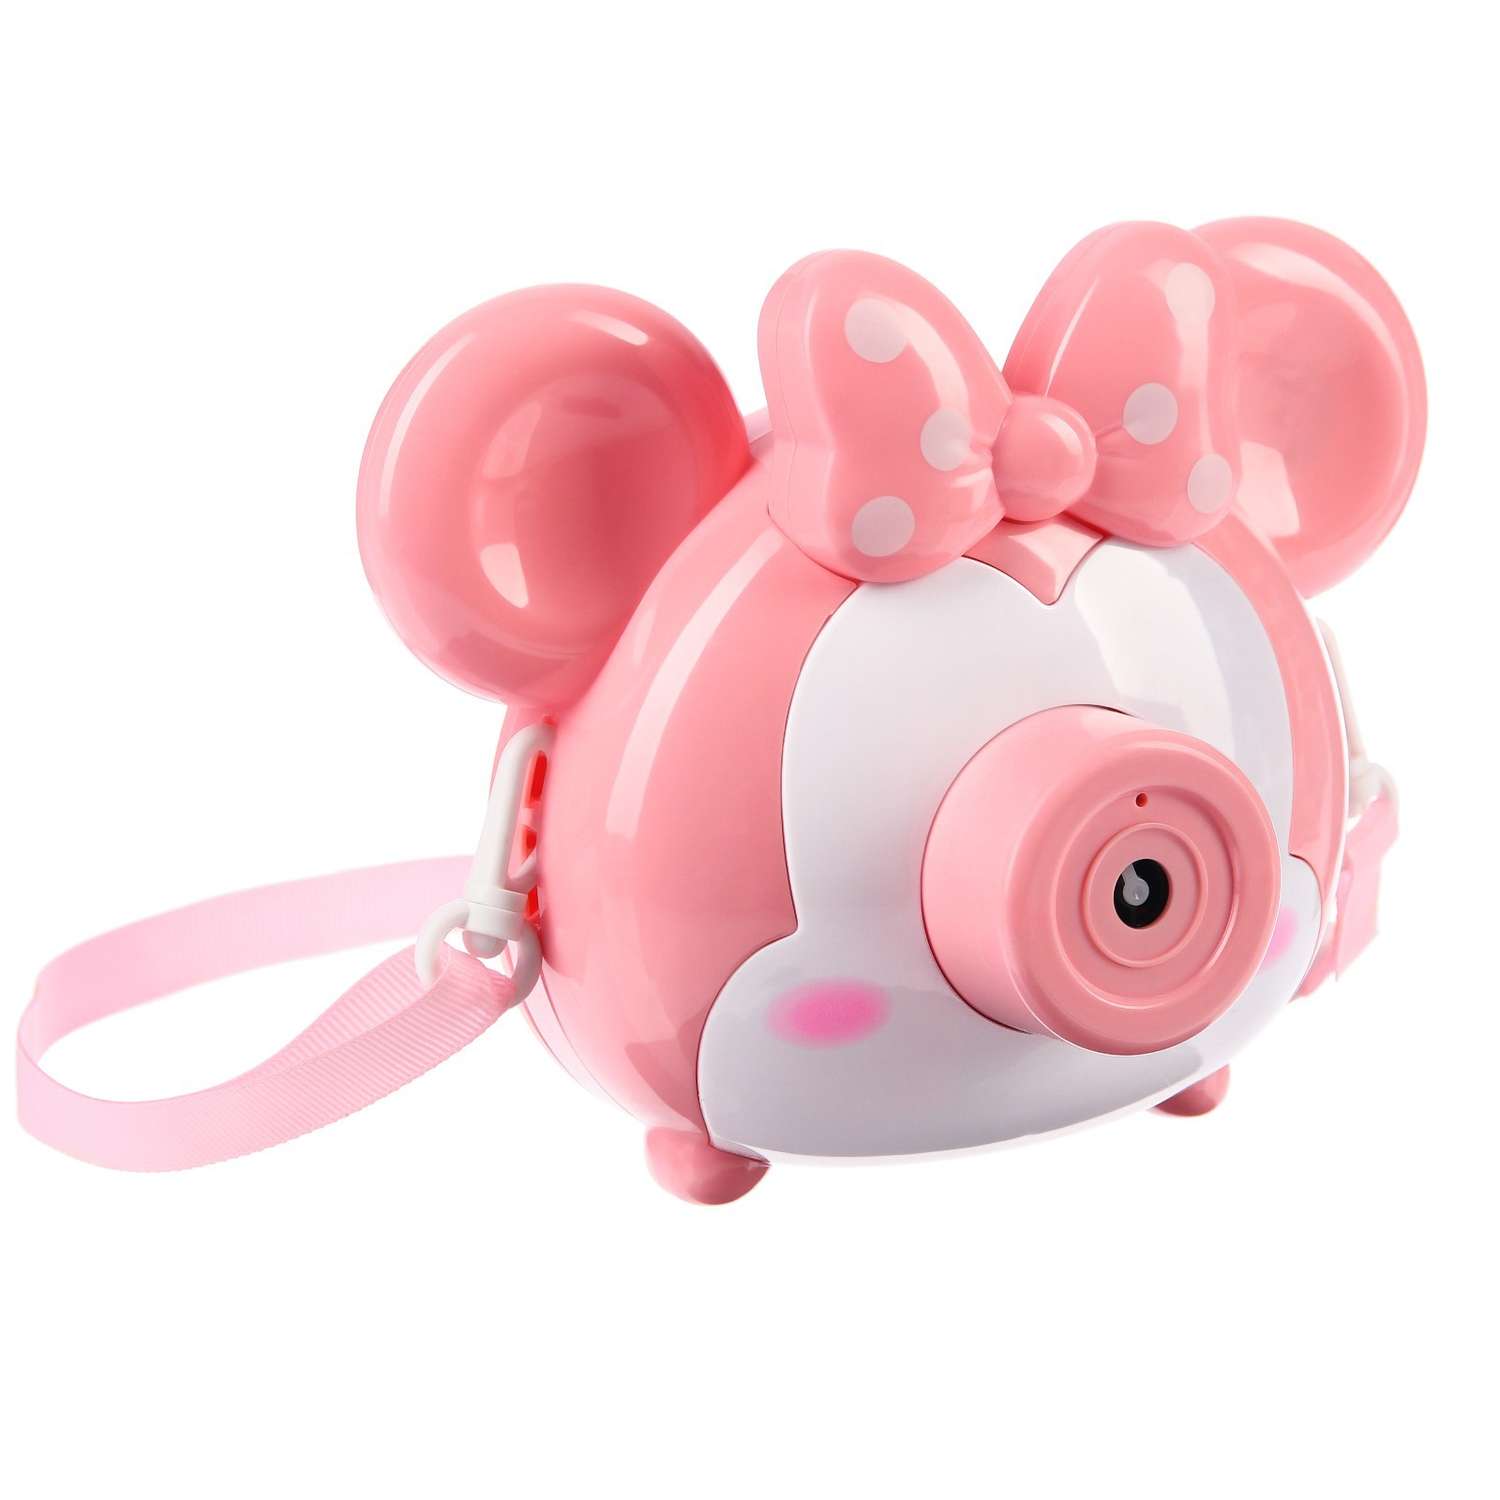 Мыльный фотоаппарат Disney Микки Маус розовый - фото 2